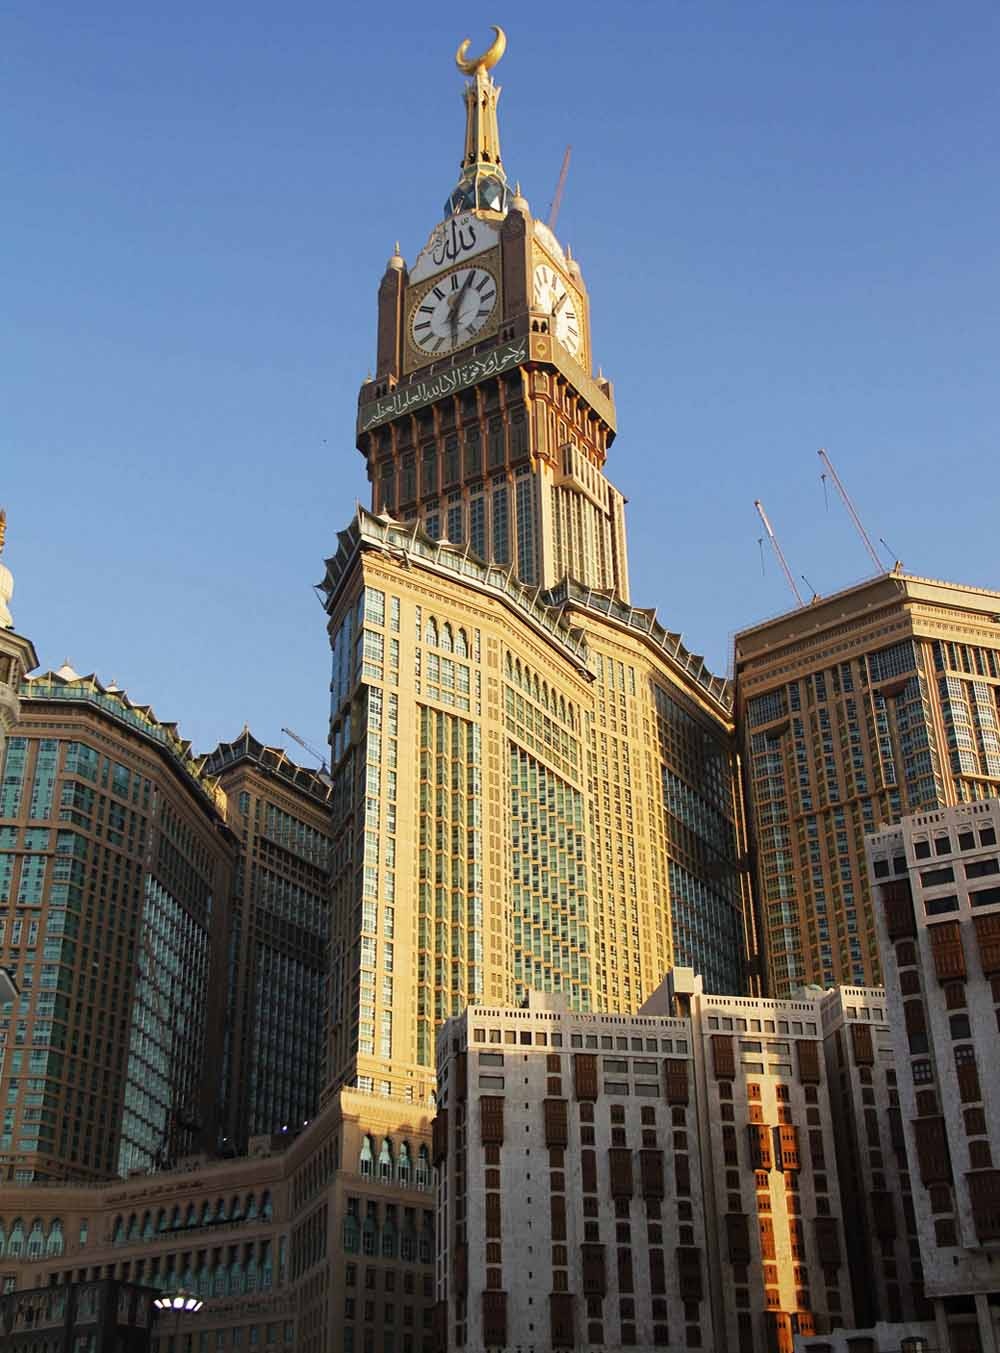 Makkah Clock Tower